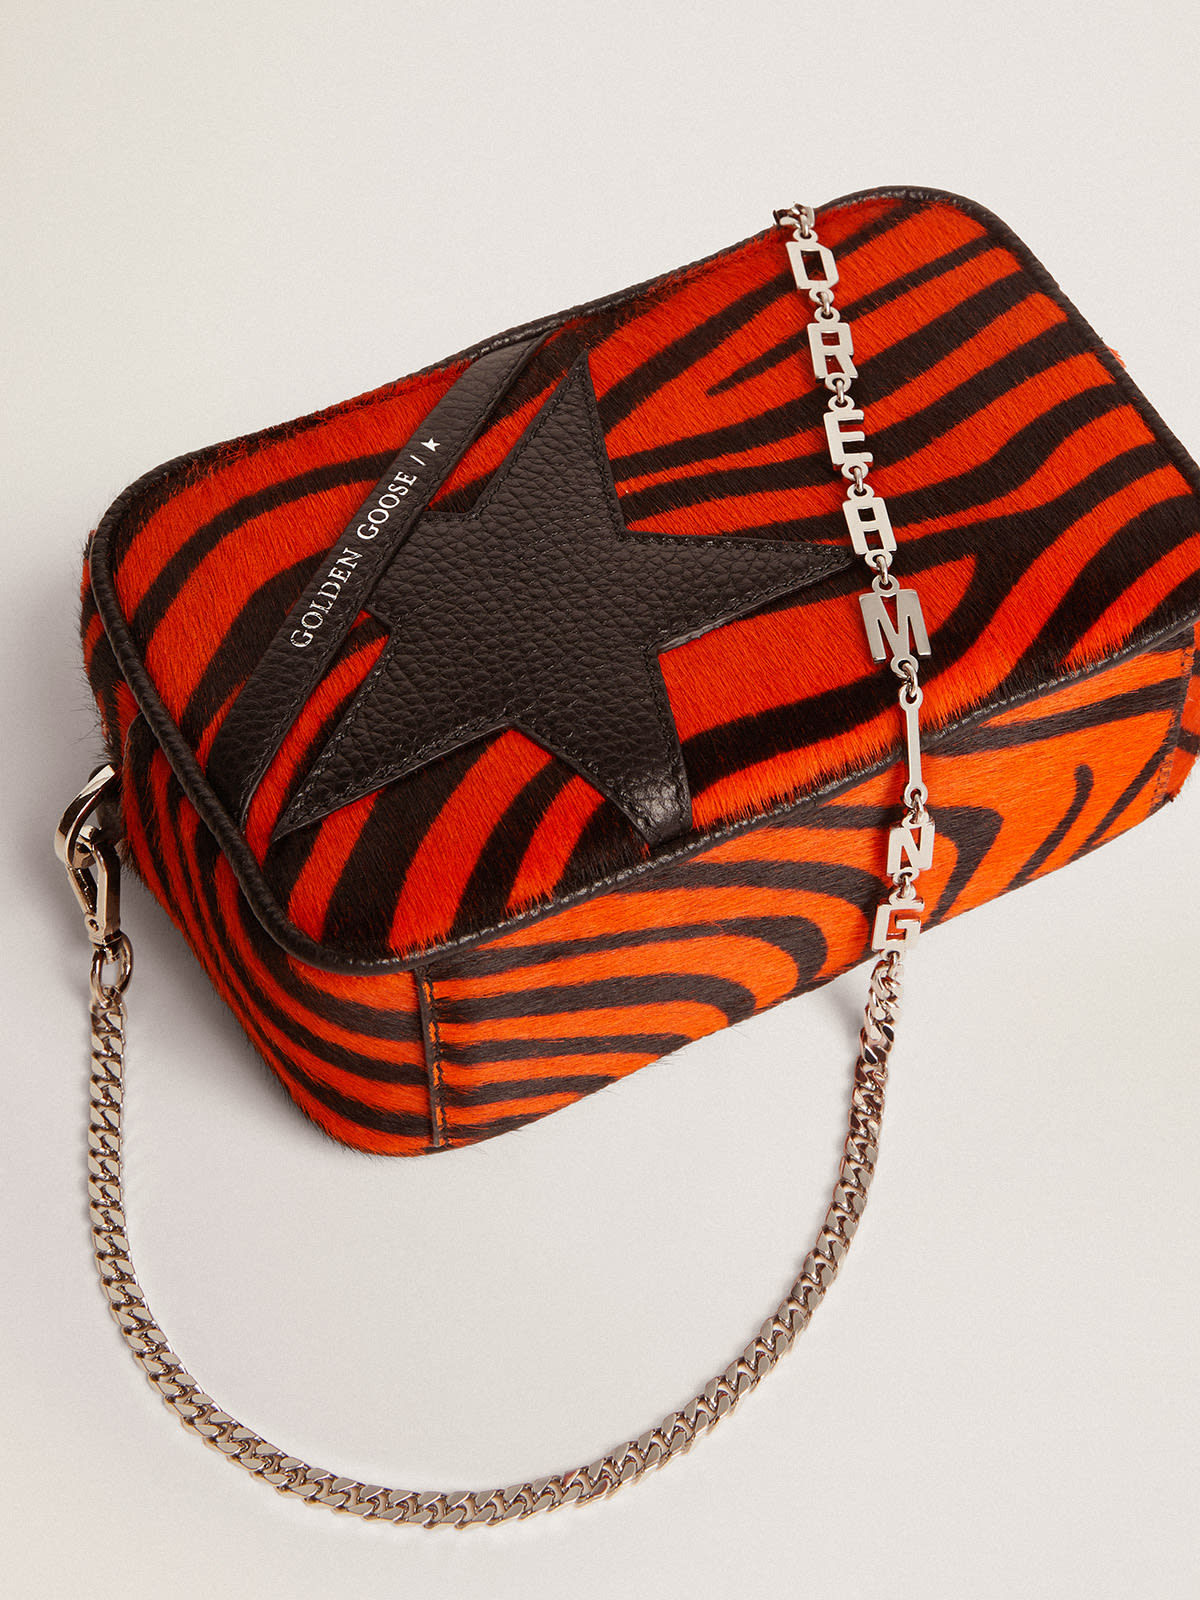 Golden Goose - Sac Mini Star Bag en cuir façon poulain tigré orange avec étoile en cuir noir in 